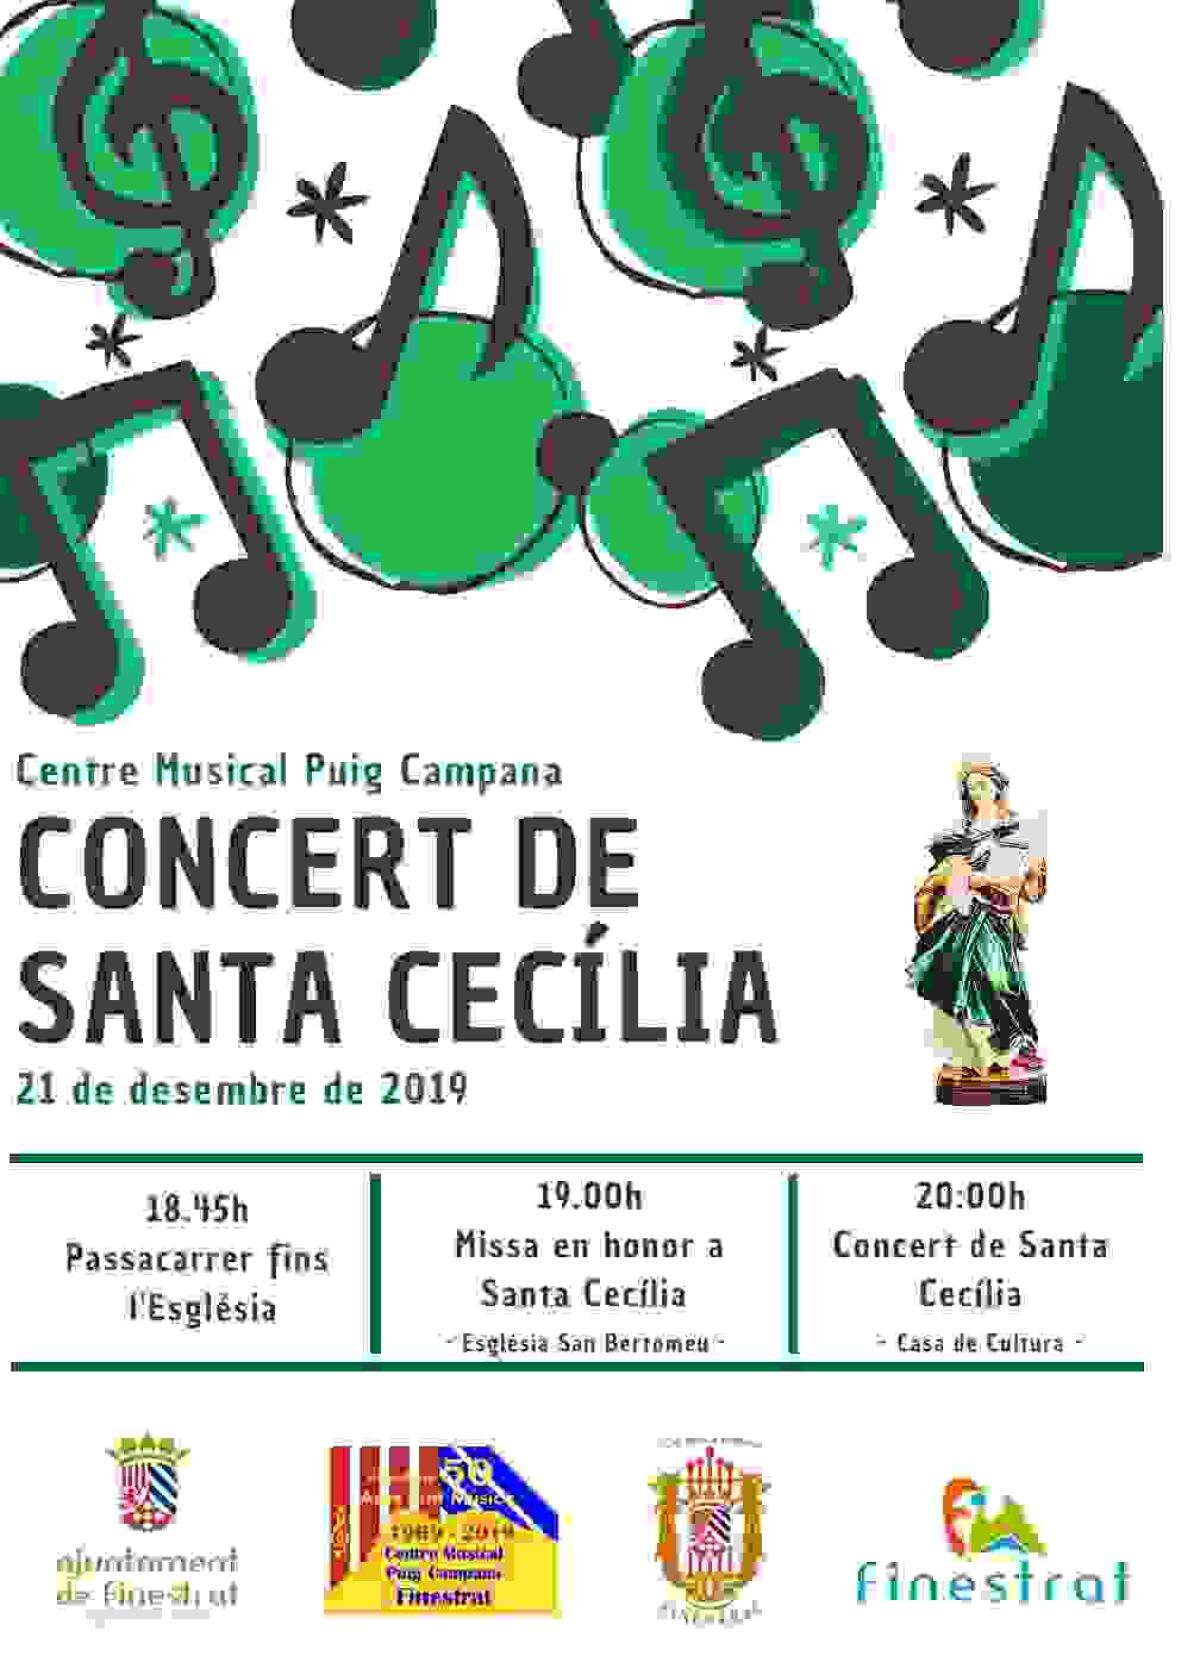 Siguen los actos por el 50º aniversario de la refundación del Centre Musical Puig Campana con la Semana de la Música en honor a Santa Cecilia